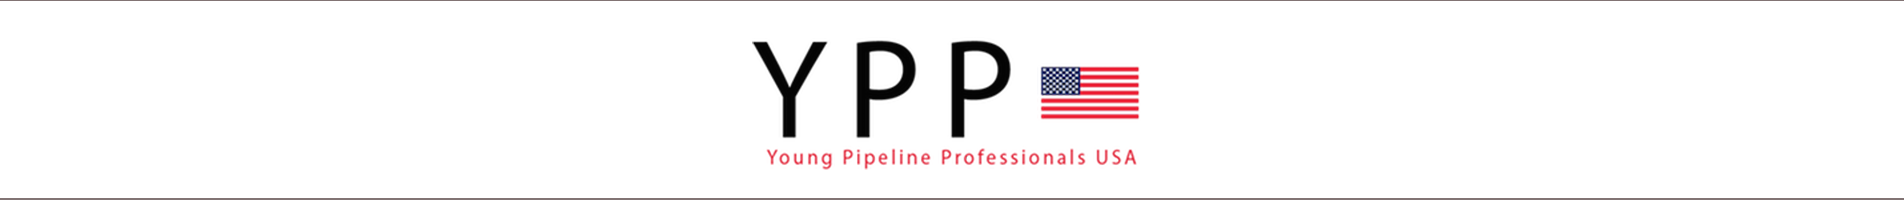 YPP USA Symposium “Our Energy Future”